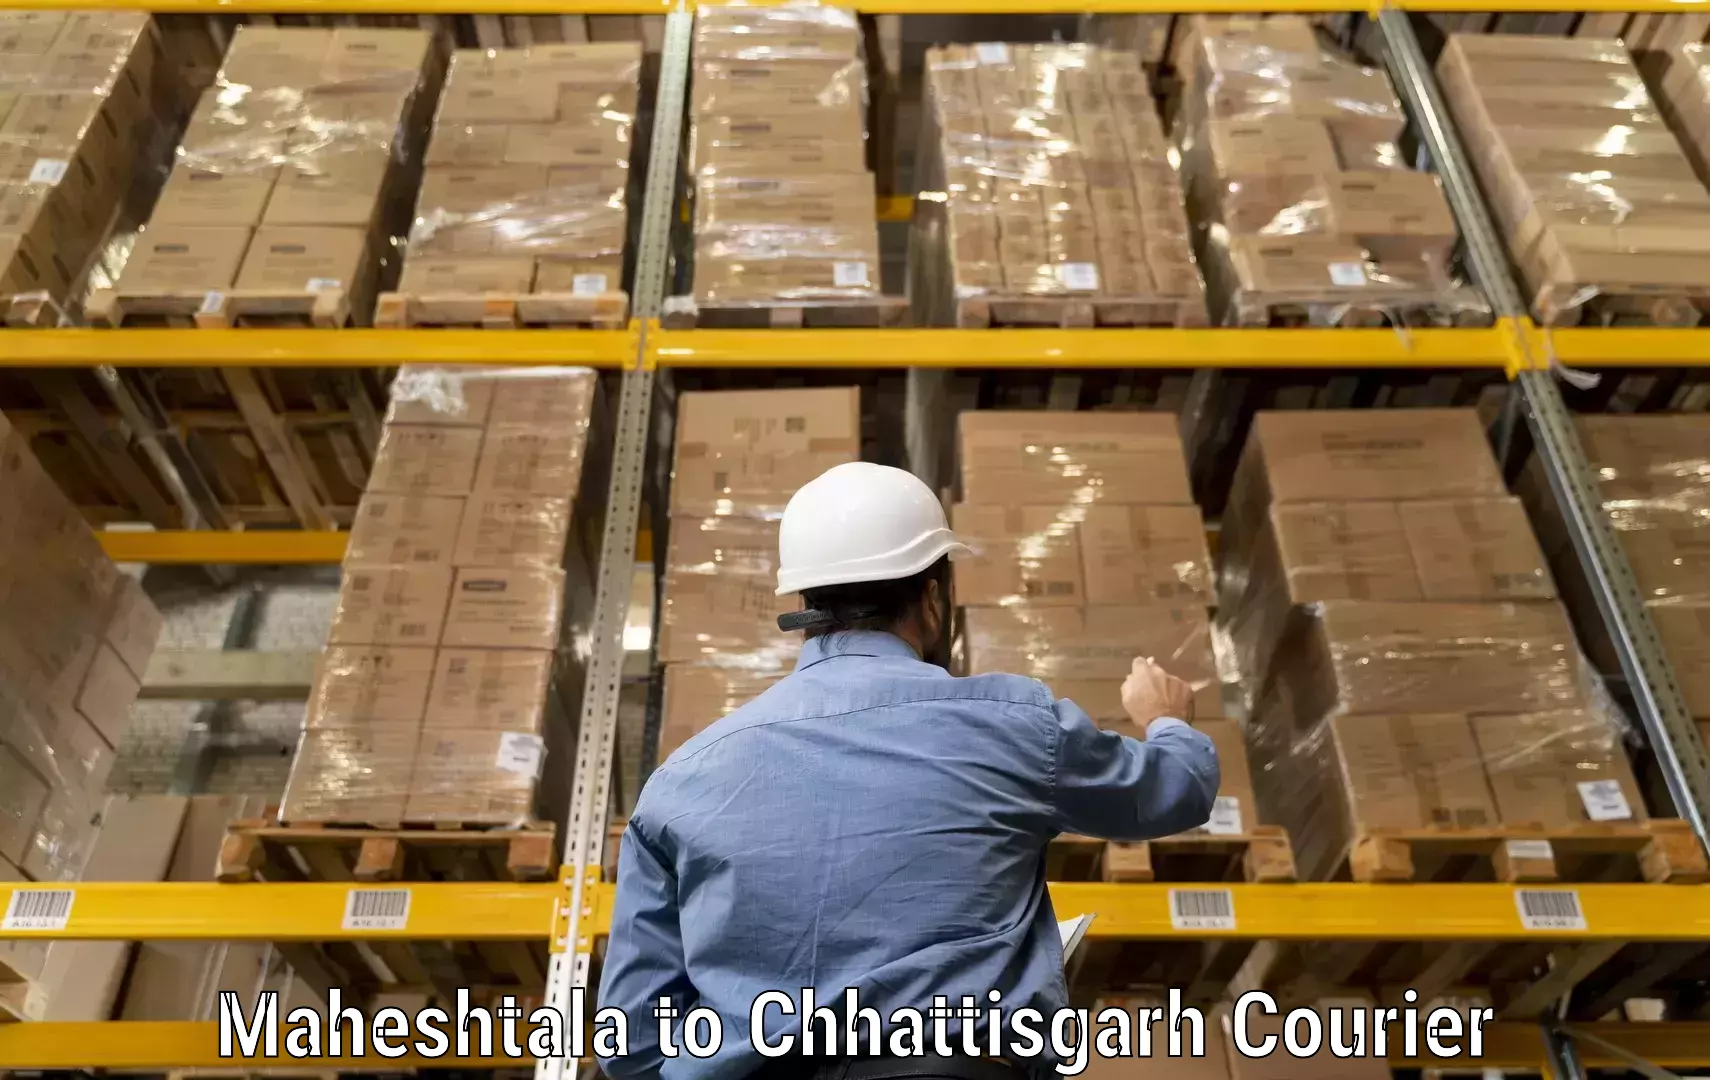 Courier service partnerships Maheshtala to Pathalgaon